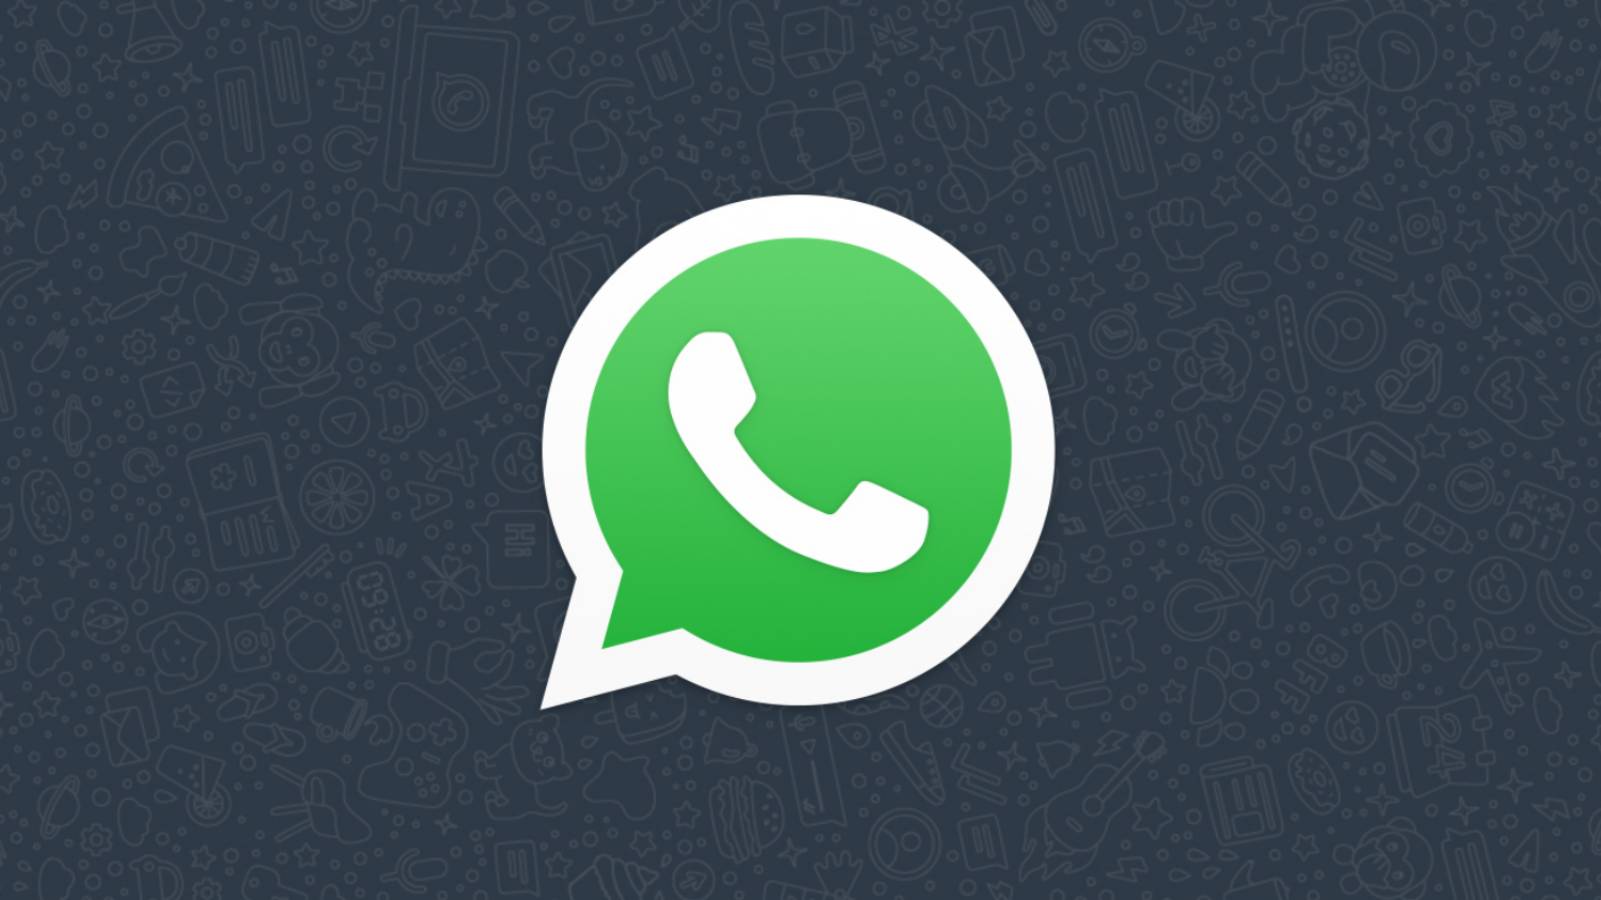 Notificación OFICIAL de WhatsApp enviada a MIL MILLONES de personas ahora